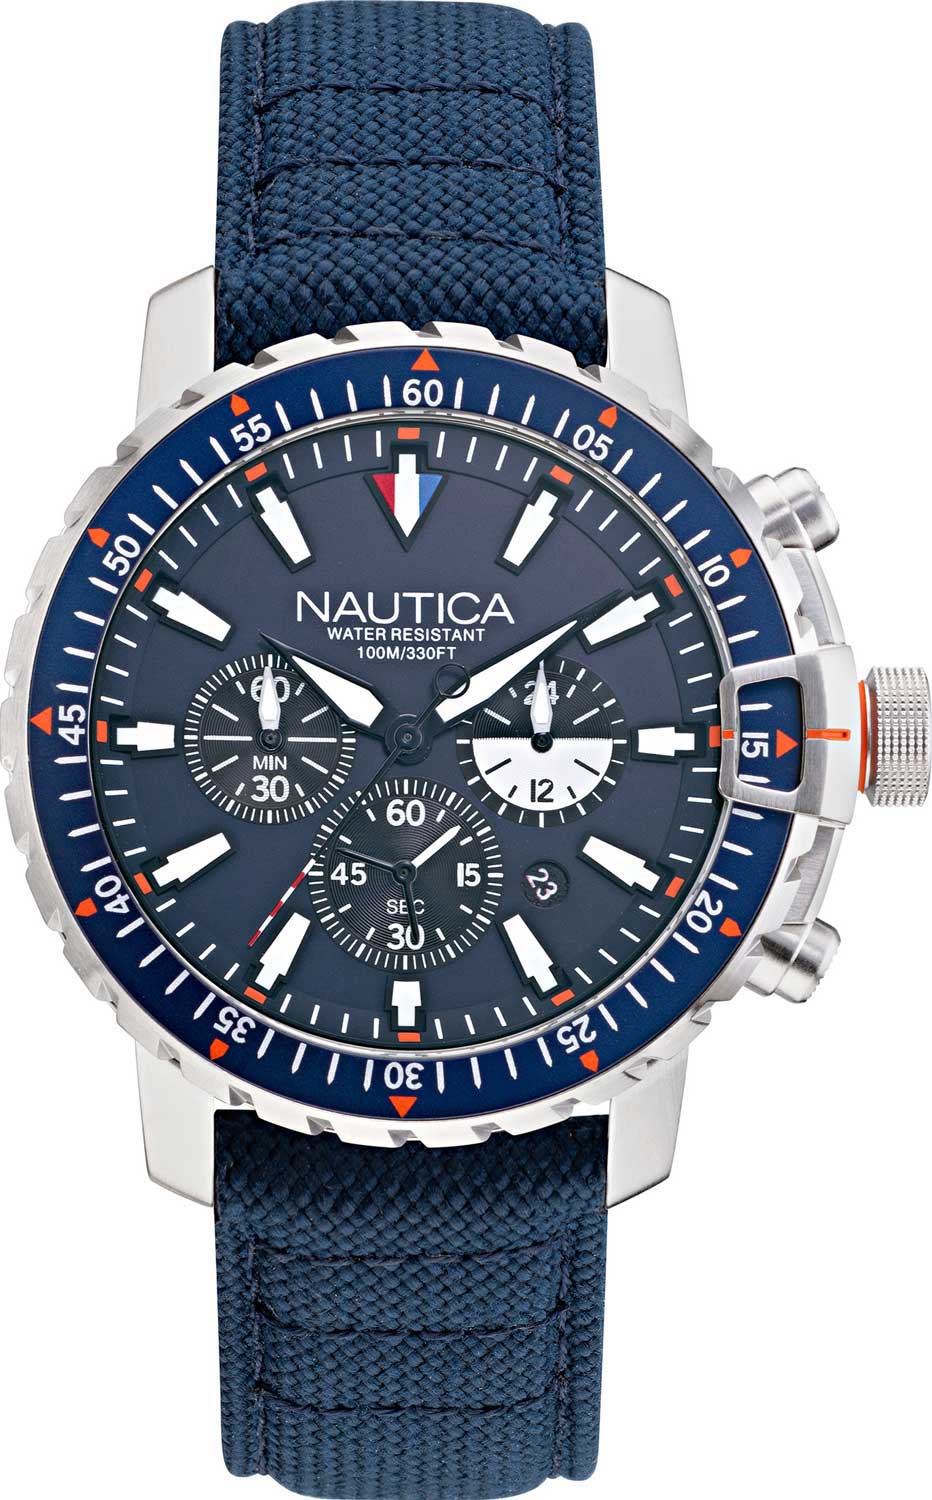 Наручные часы Nautica NAPICS006 с хронографом